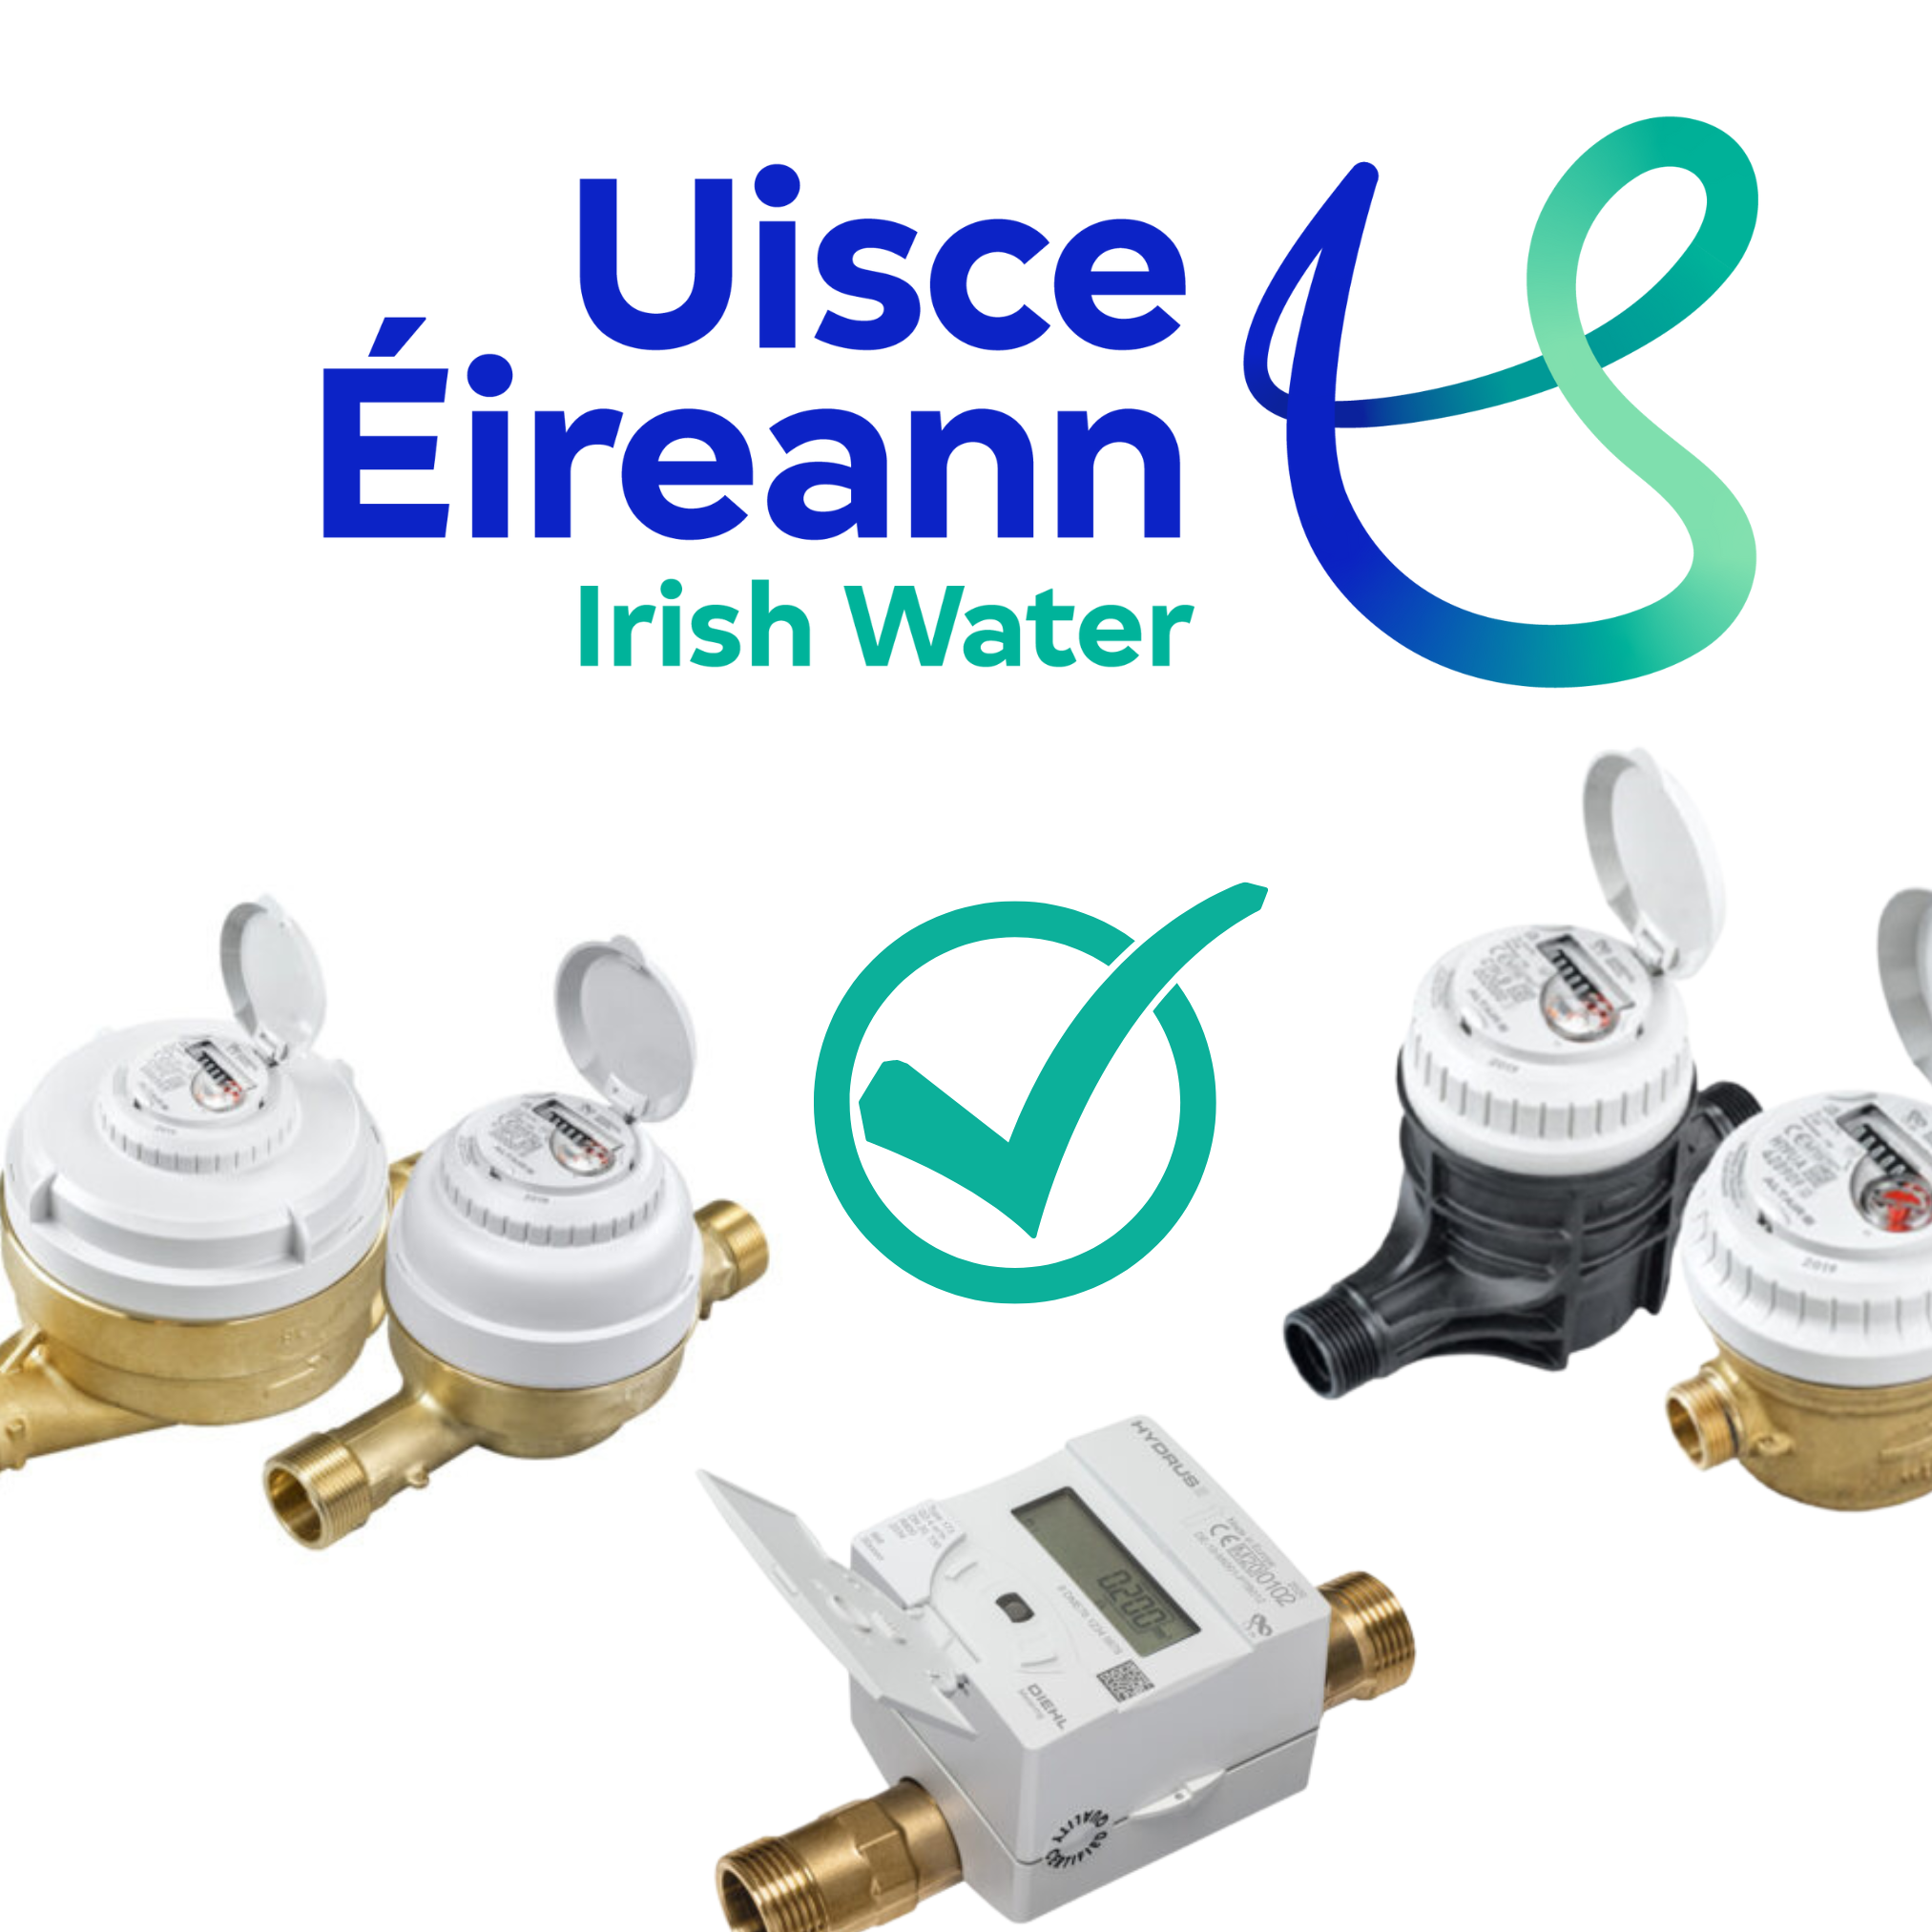 Diehl Metering approved by Uisce Éireann (Irish Water).